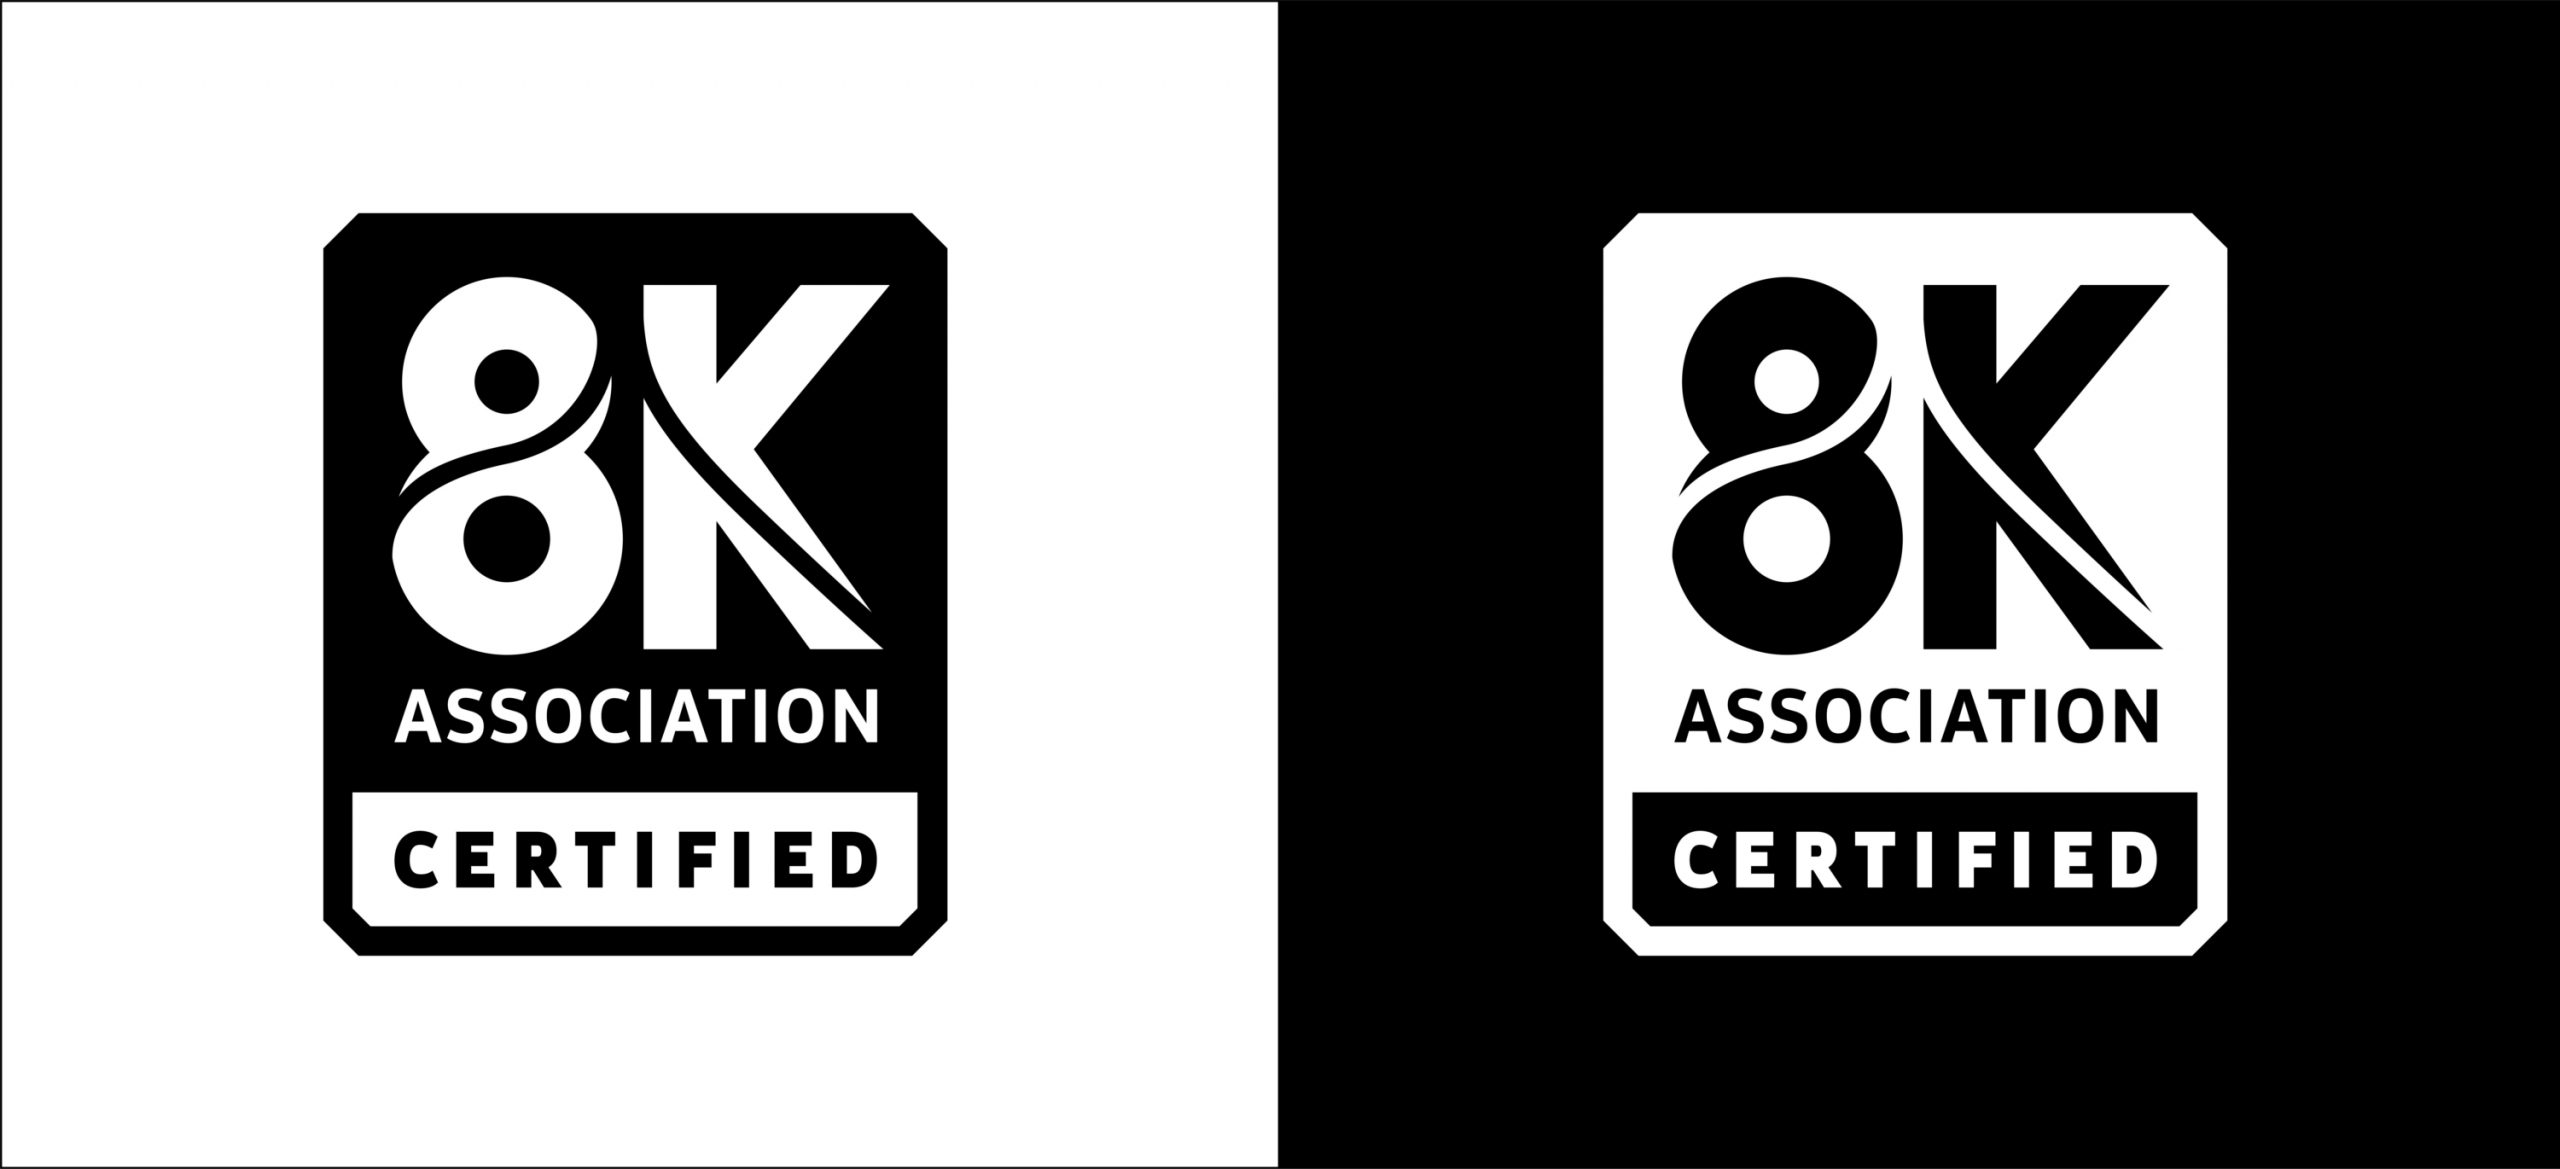 Foto de Samsung se alía con la 8K Association para lanzar un programa de certificación